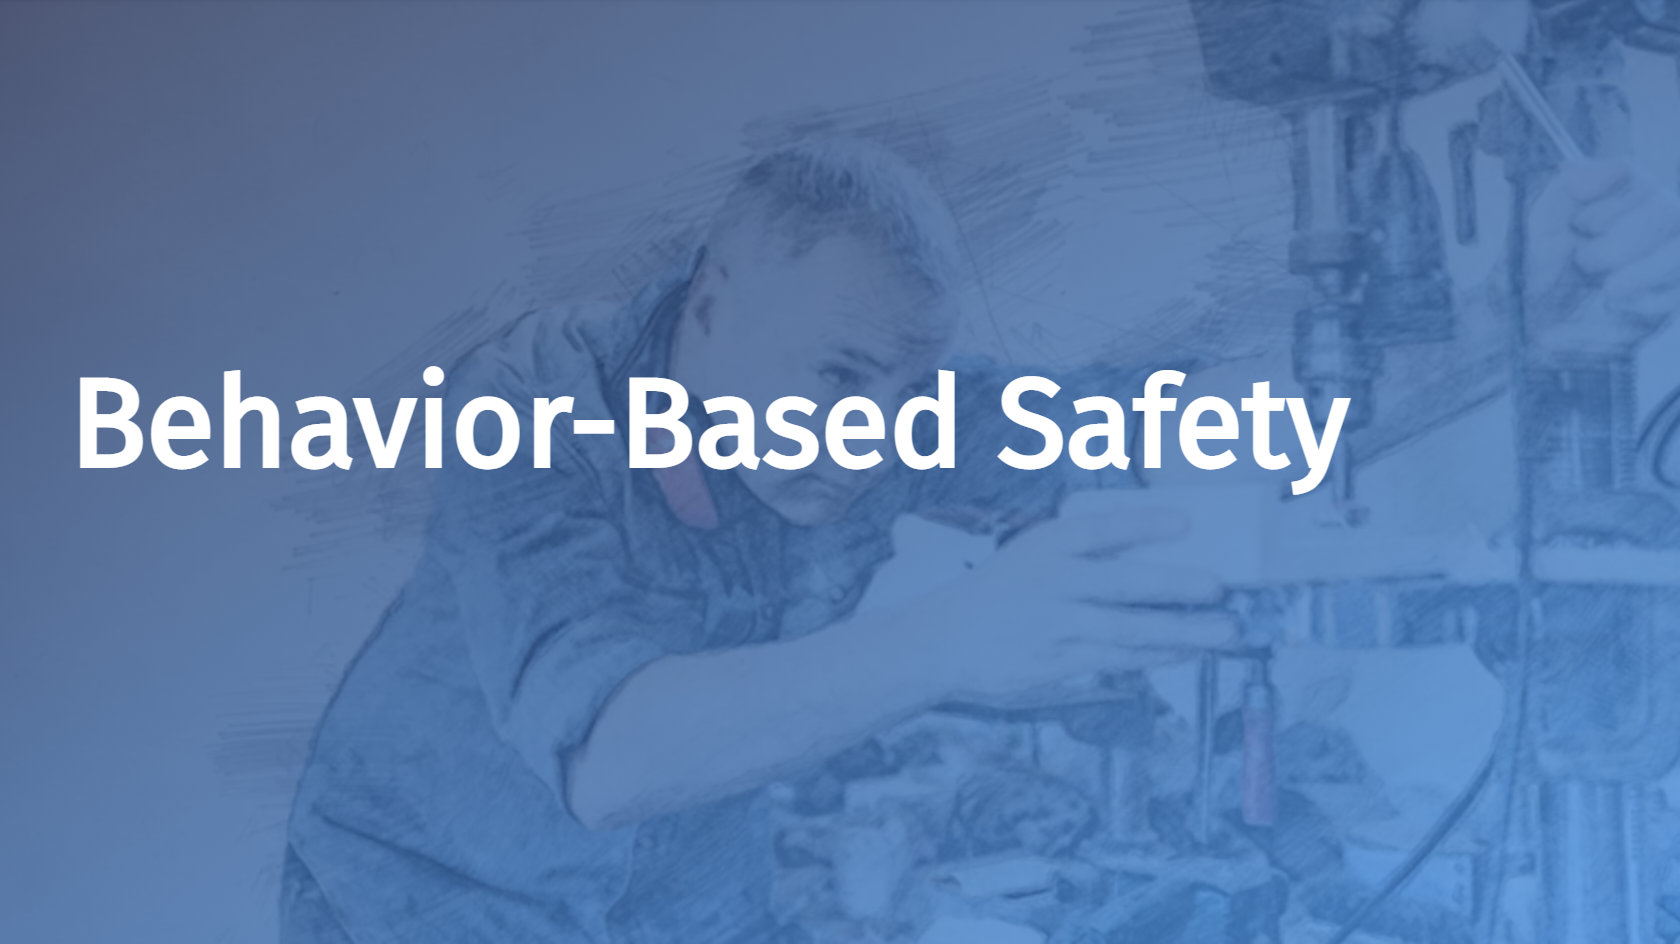 Behavior-Based Safety